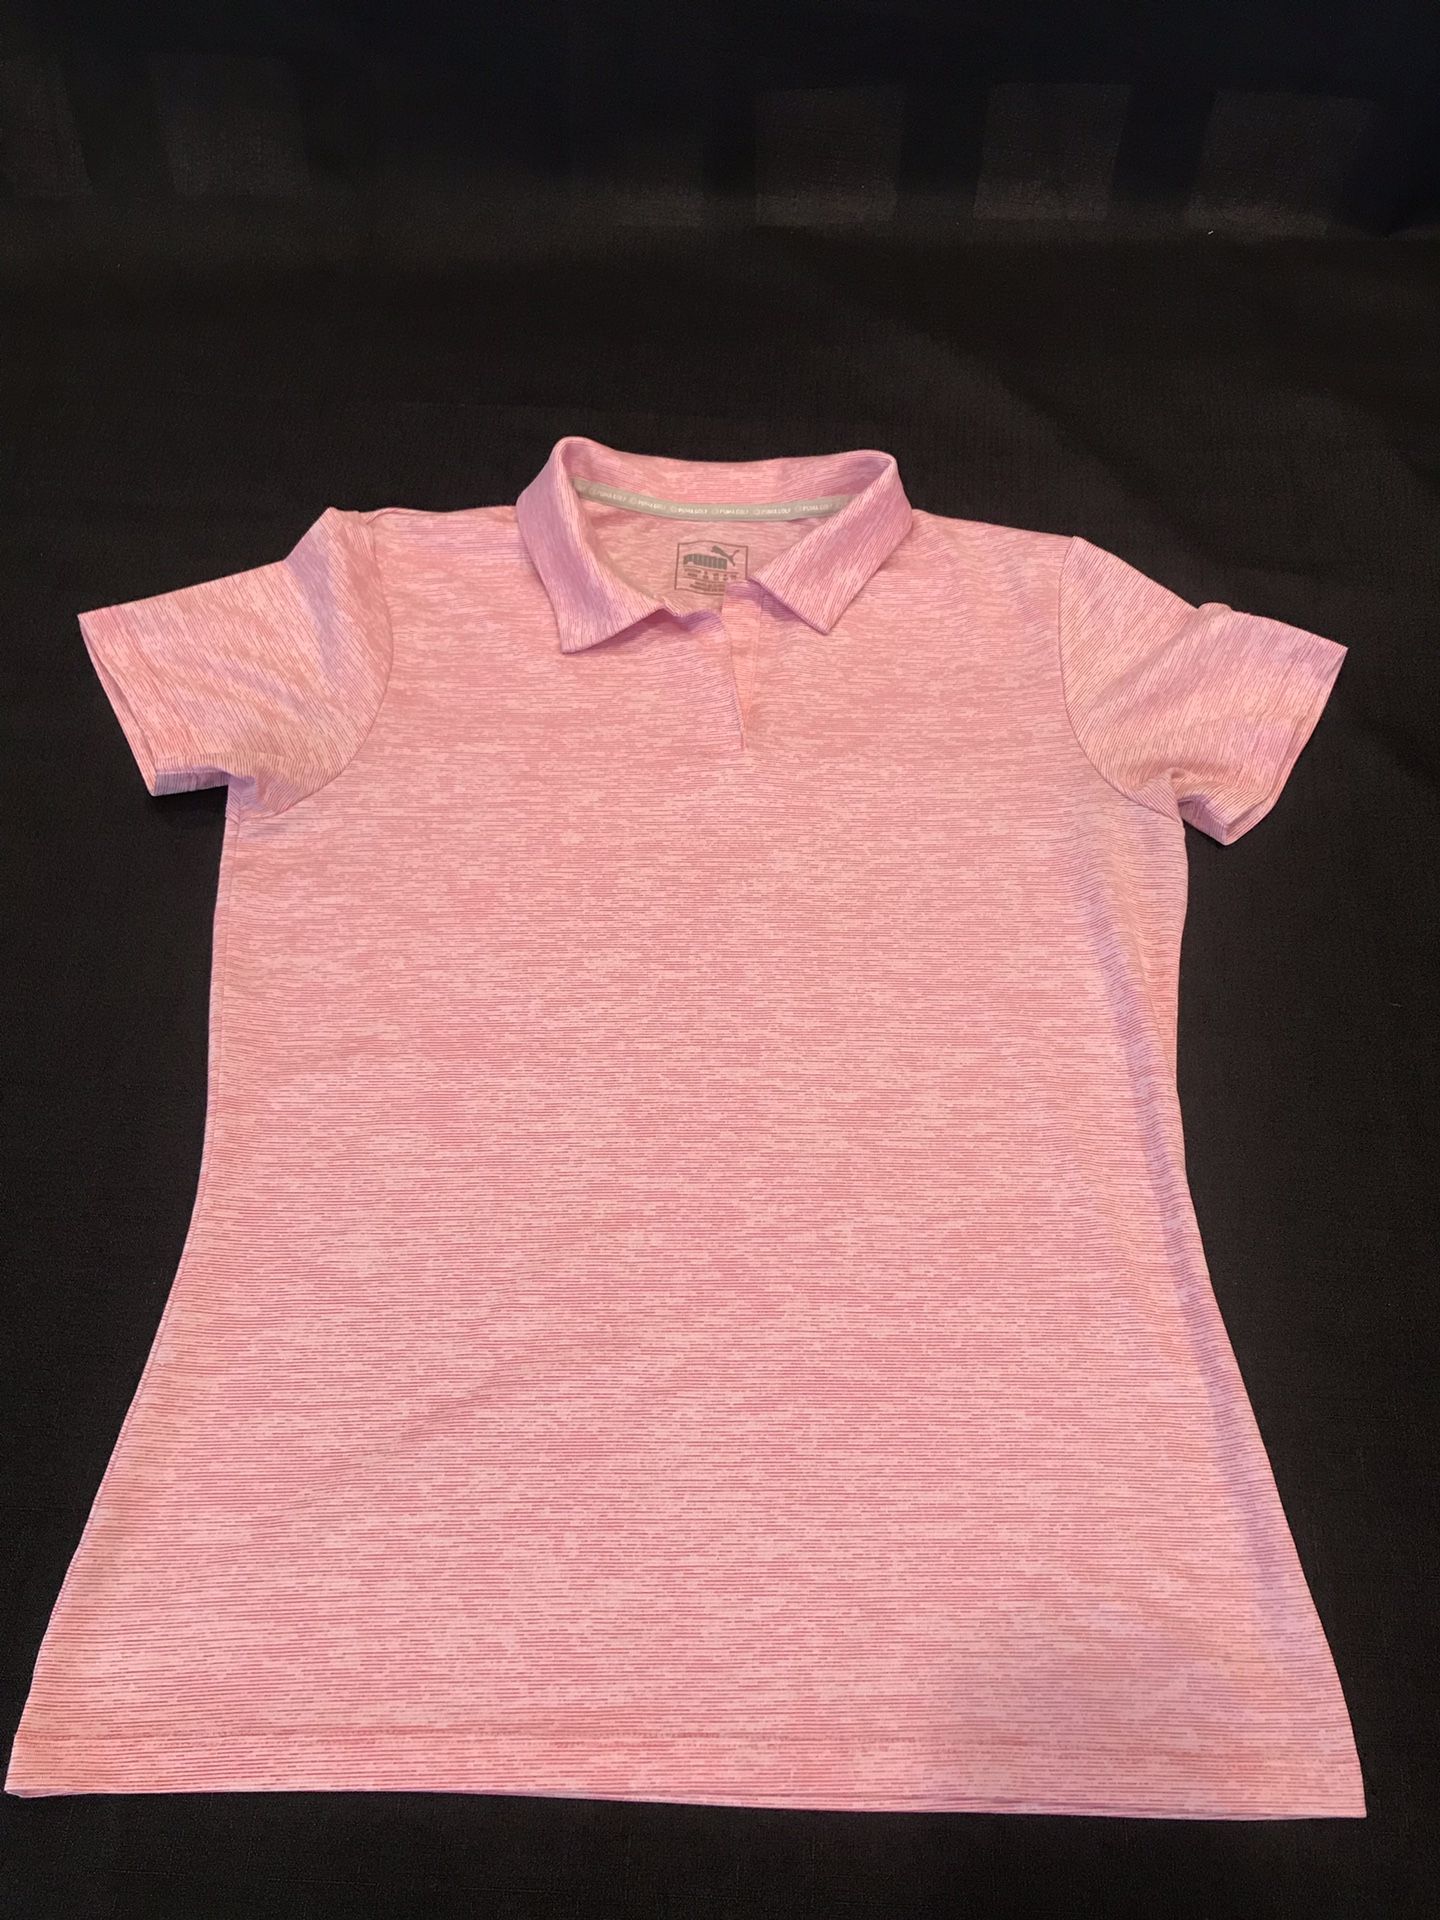 Puma- Golf women’s (M) soft pink shirt